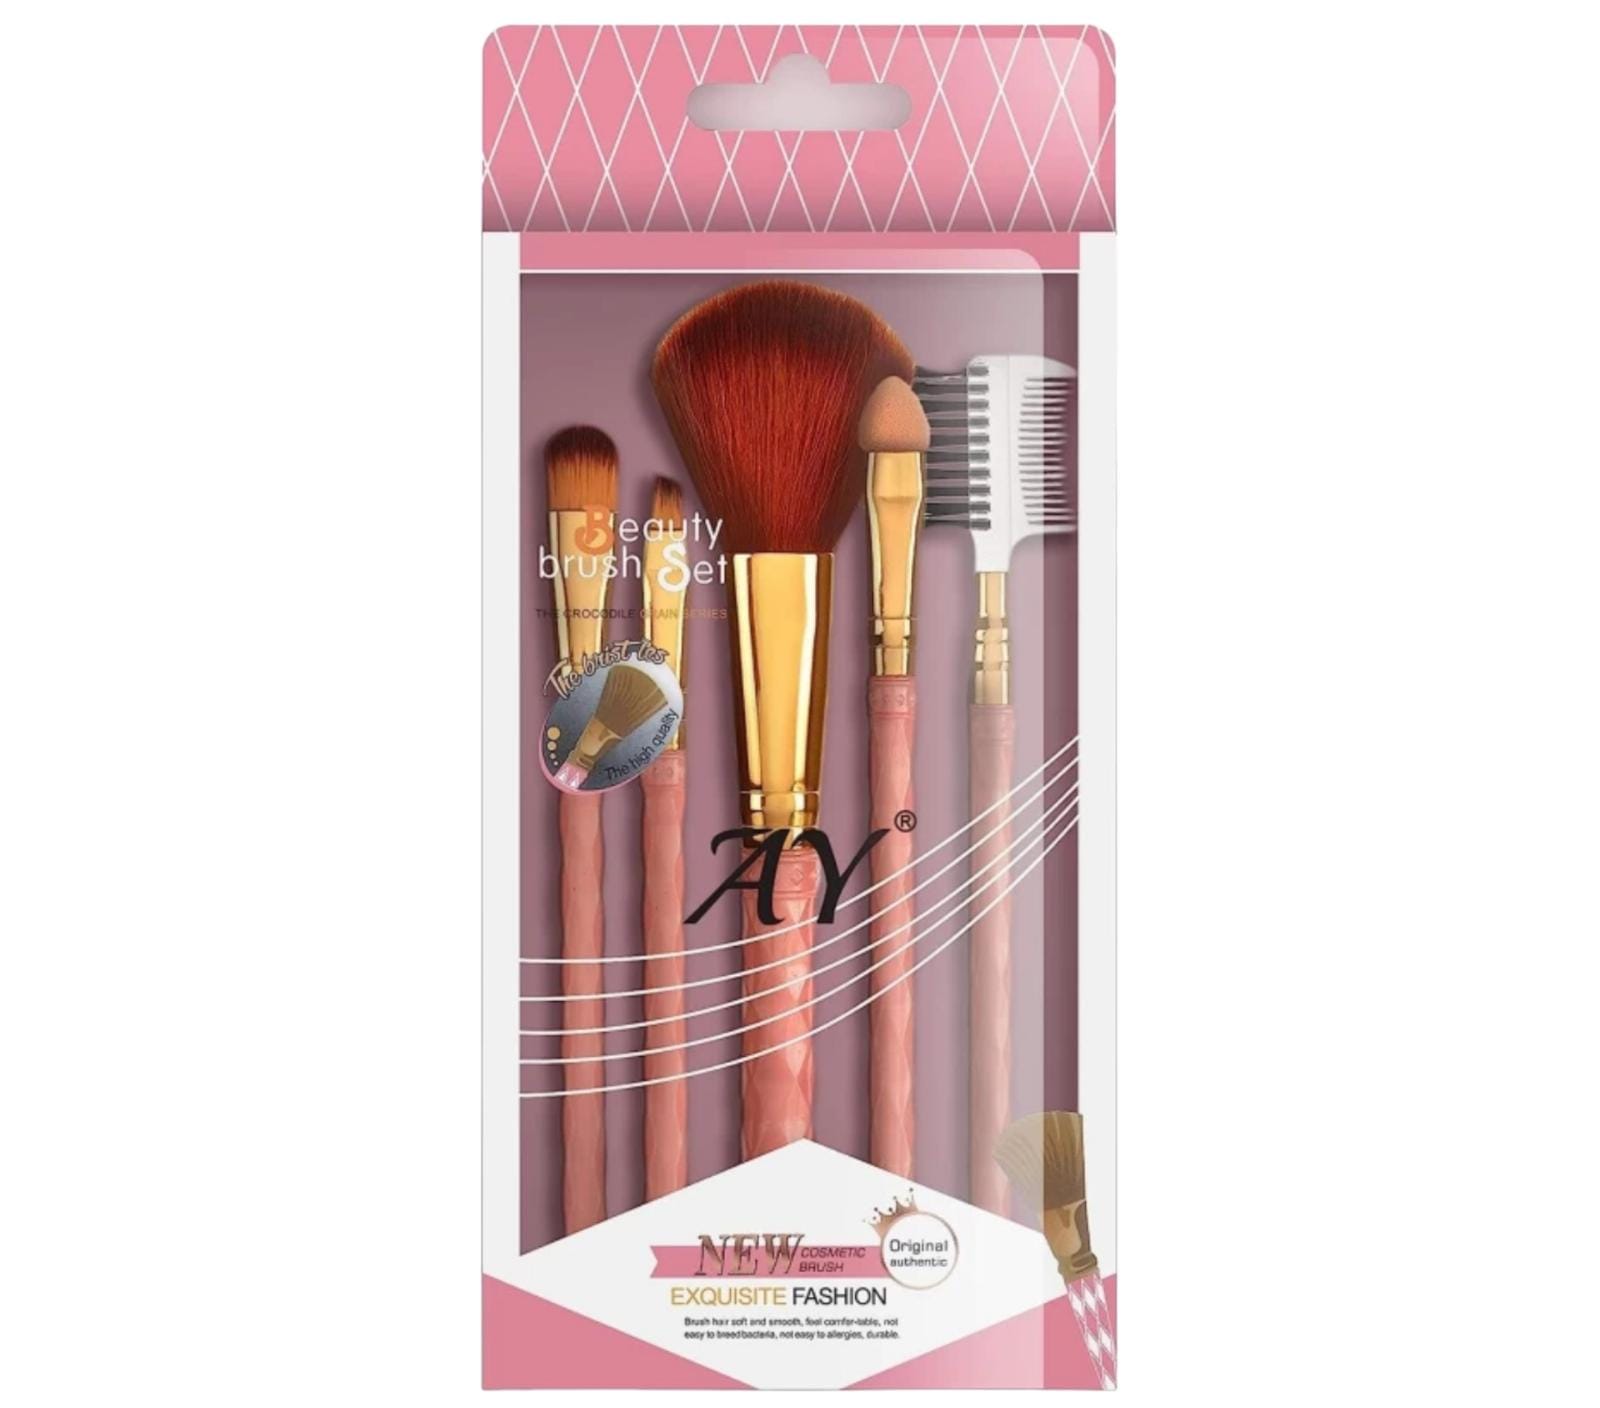 Makeup brush set of five 